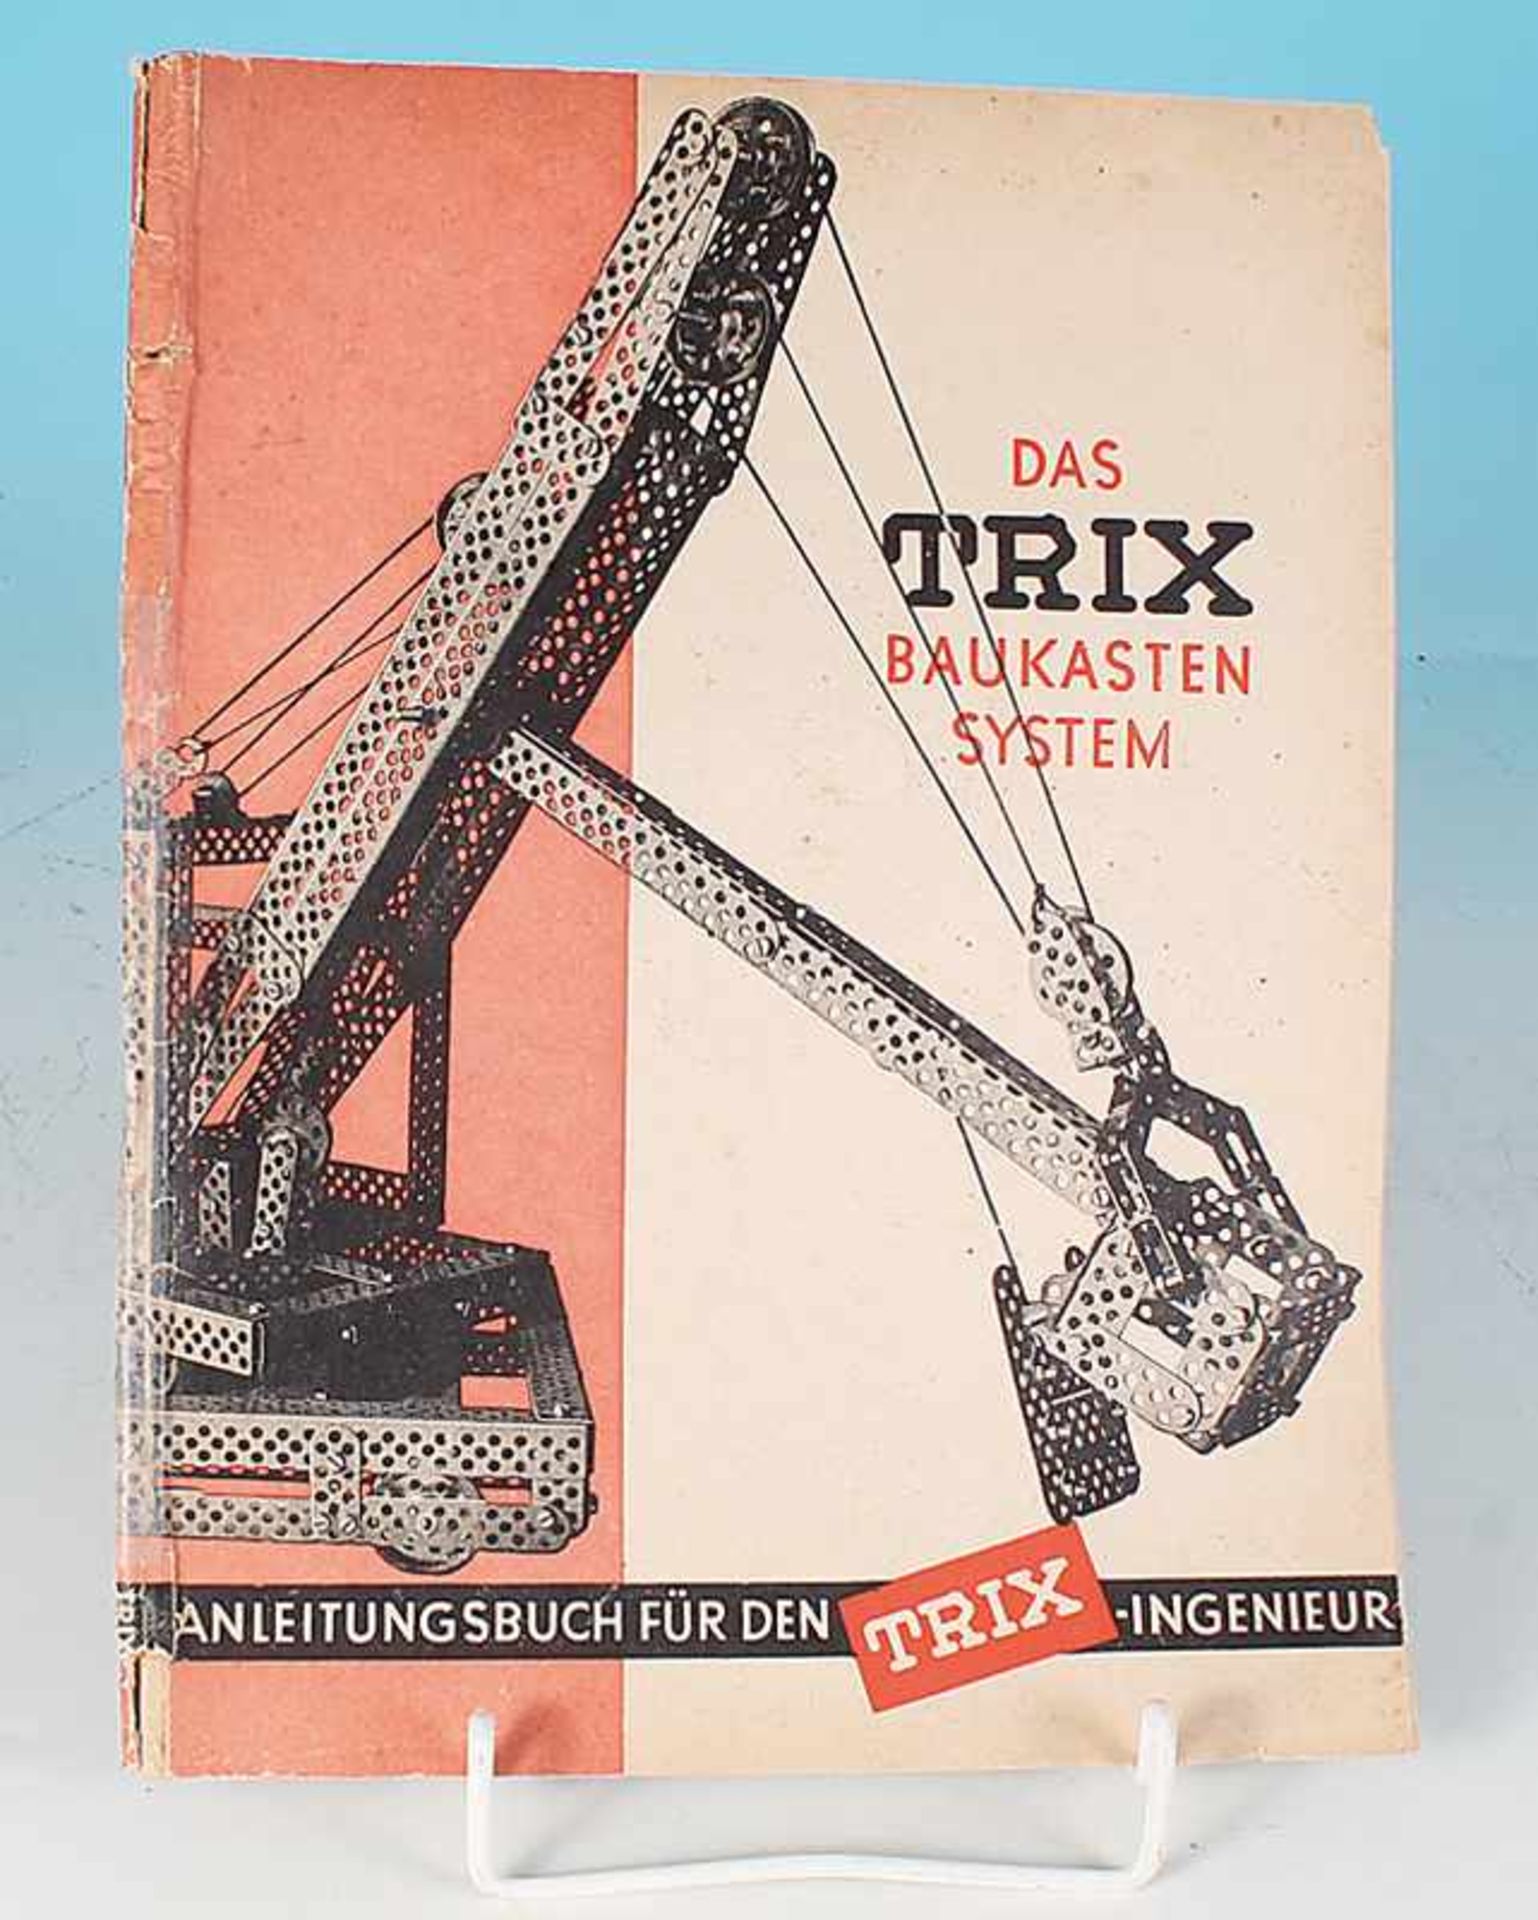 TRIX Baukasten System